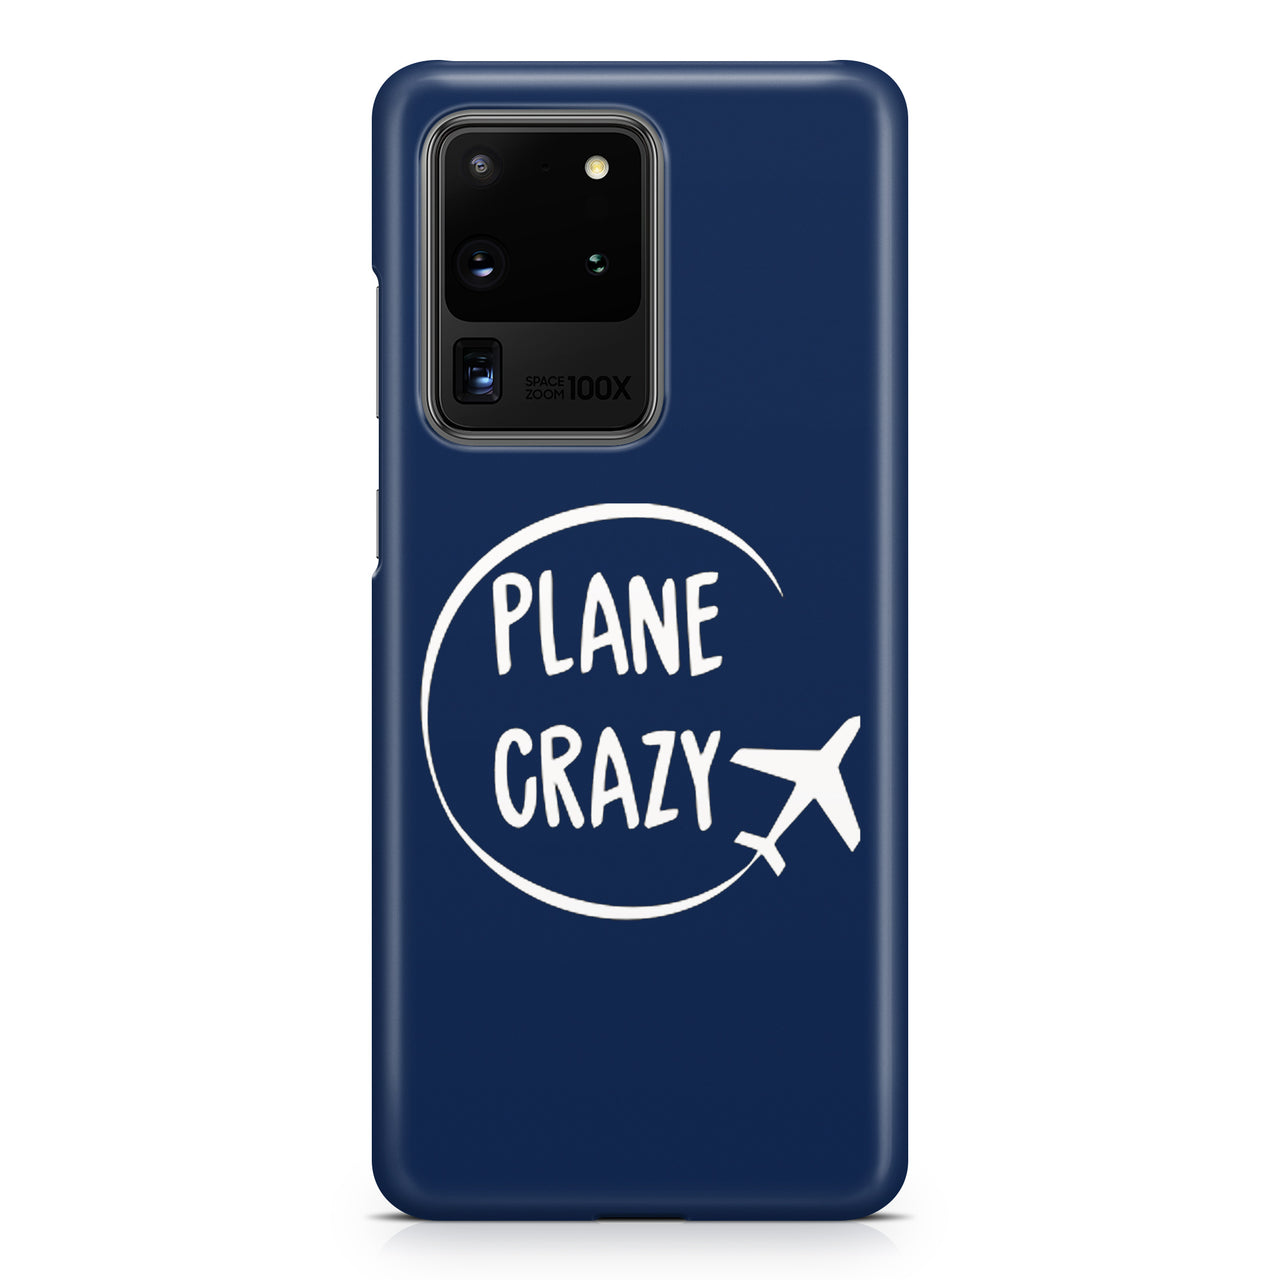 Plane Crazy Samsung A Cases